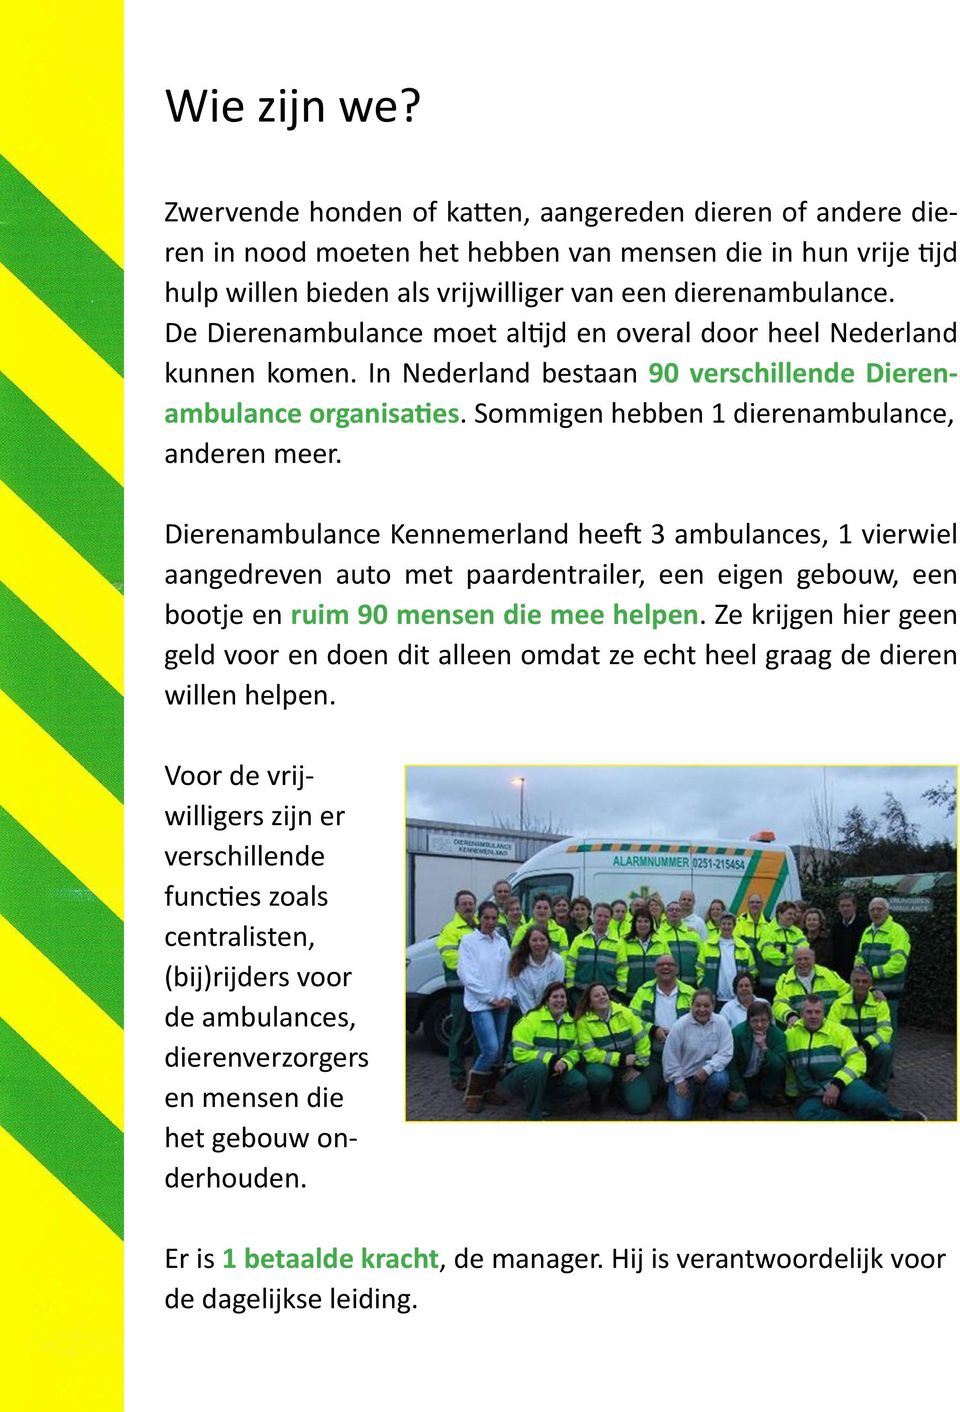 Dierenambulance Kennemerland heeft 3 ambulances, 1 vierwiel aangedreven auto met paardentrailer, een eigen gebouw, een bootje en ruim 90 mensen die mee helpen.